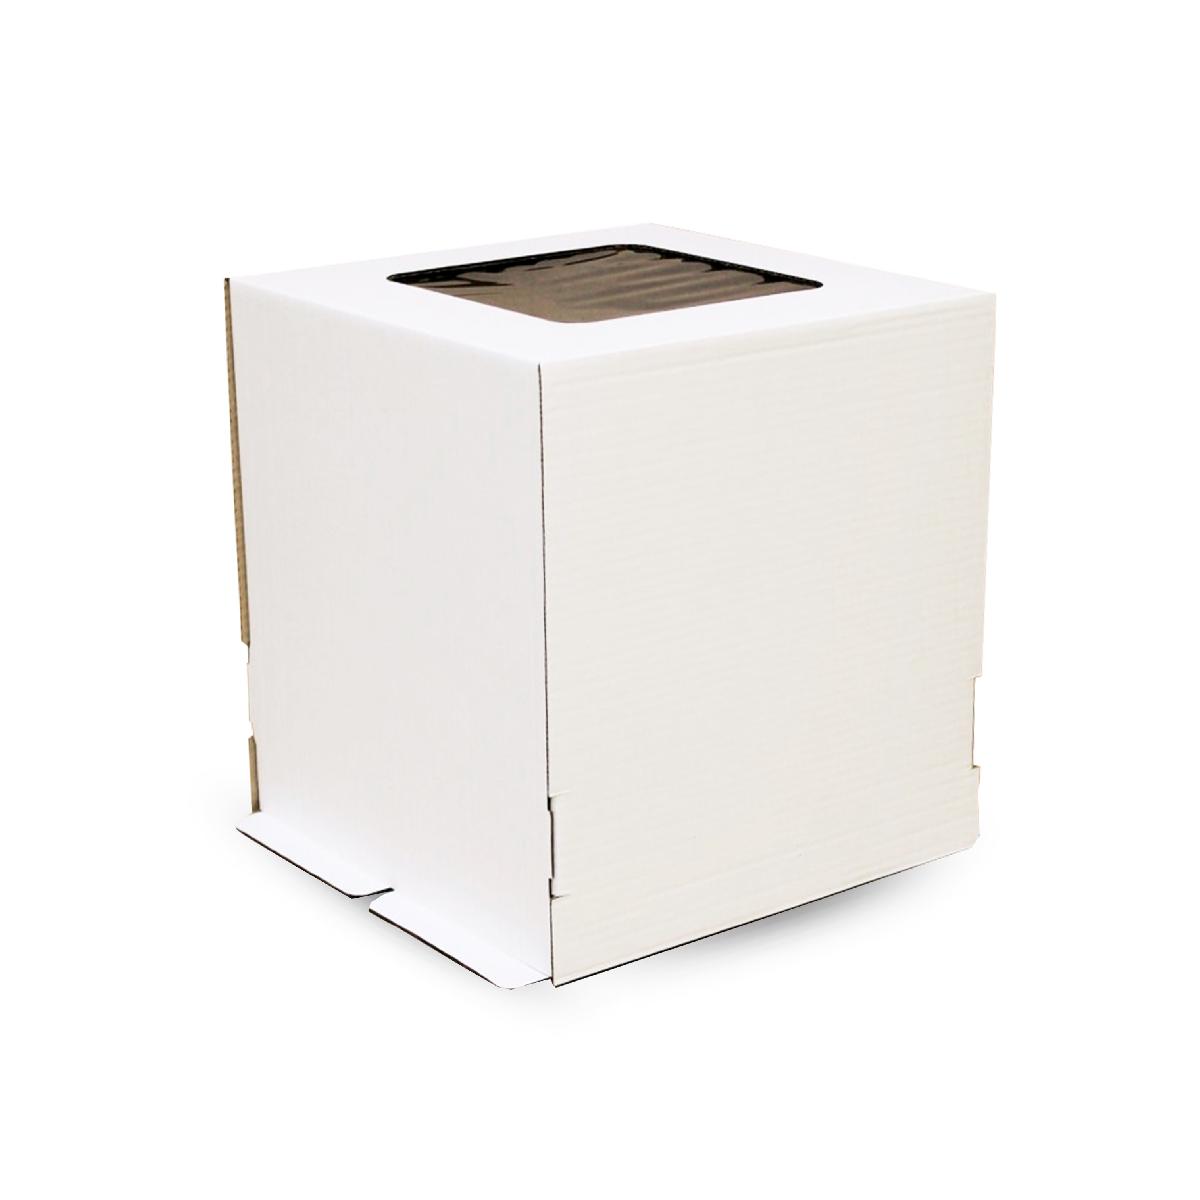 Коробка картонная для торта c окном ForGenika STRONG I S белая 260*260*300 (20)